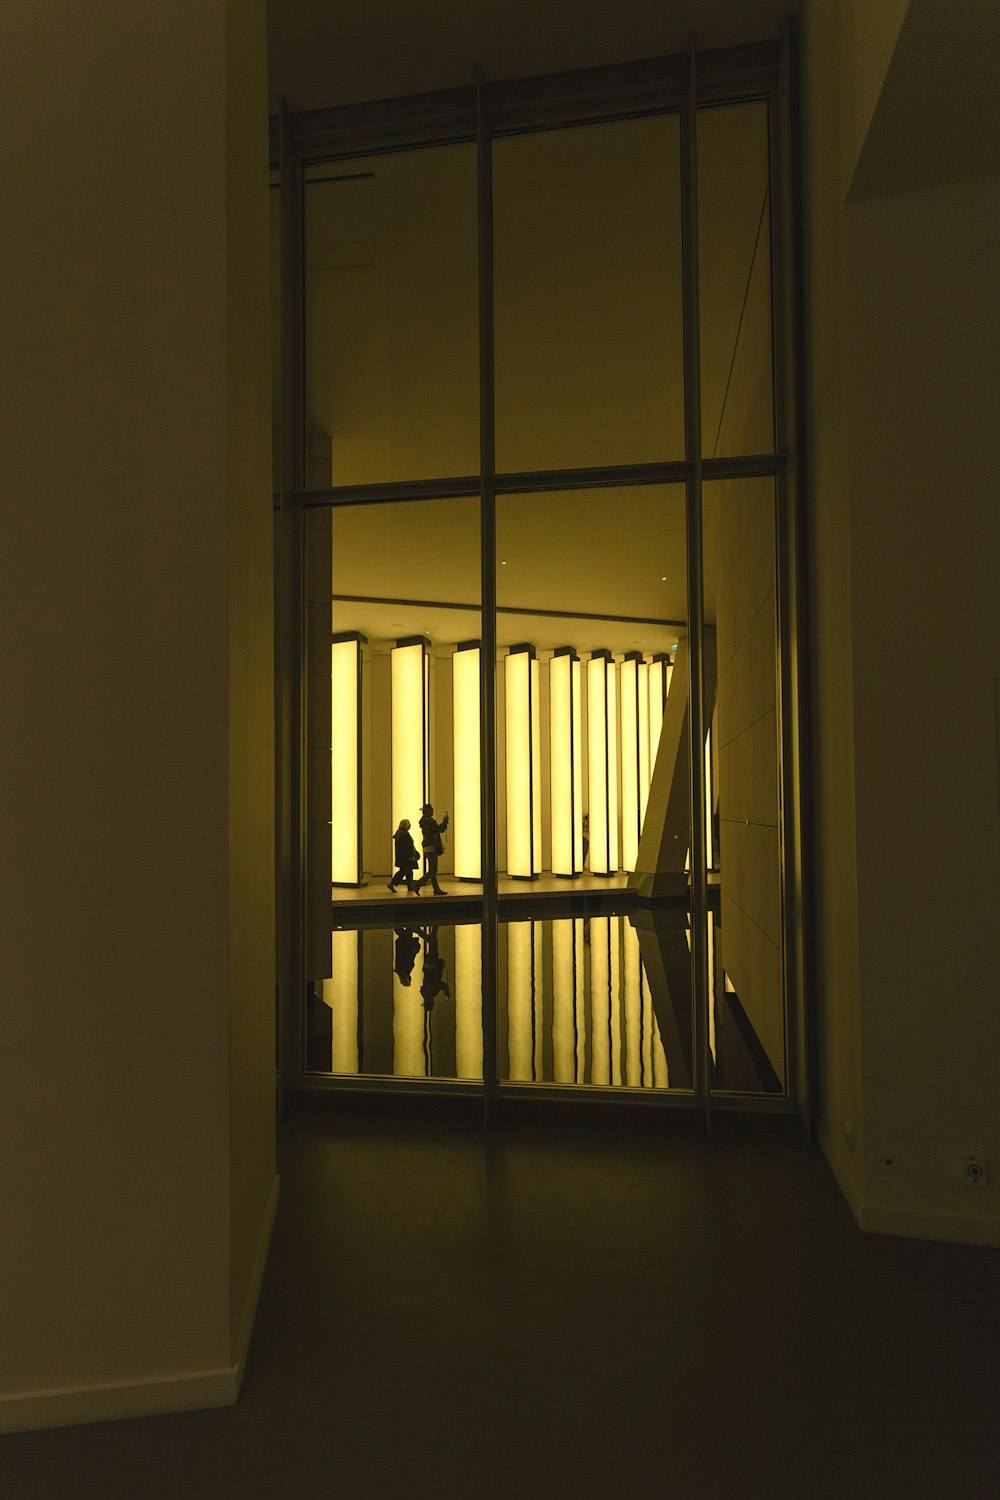 silhouette de deux personnes marchant à l’intérieur du bâtiment pendant l’heure dorée